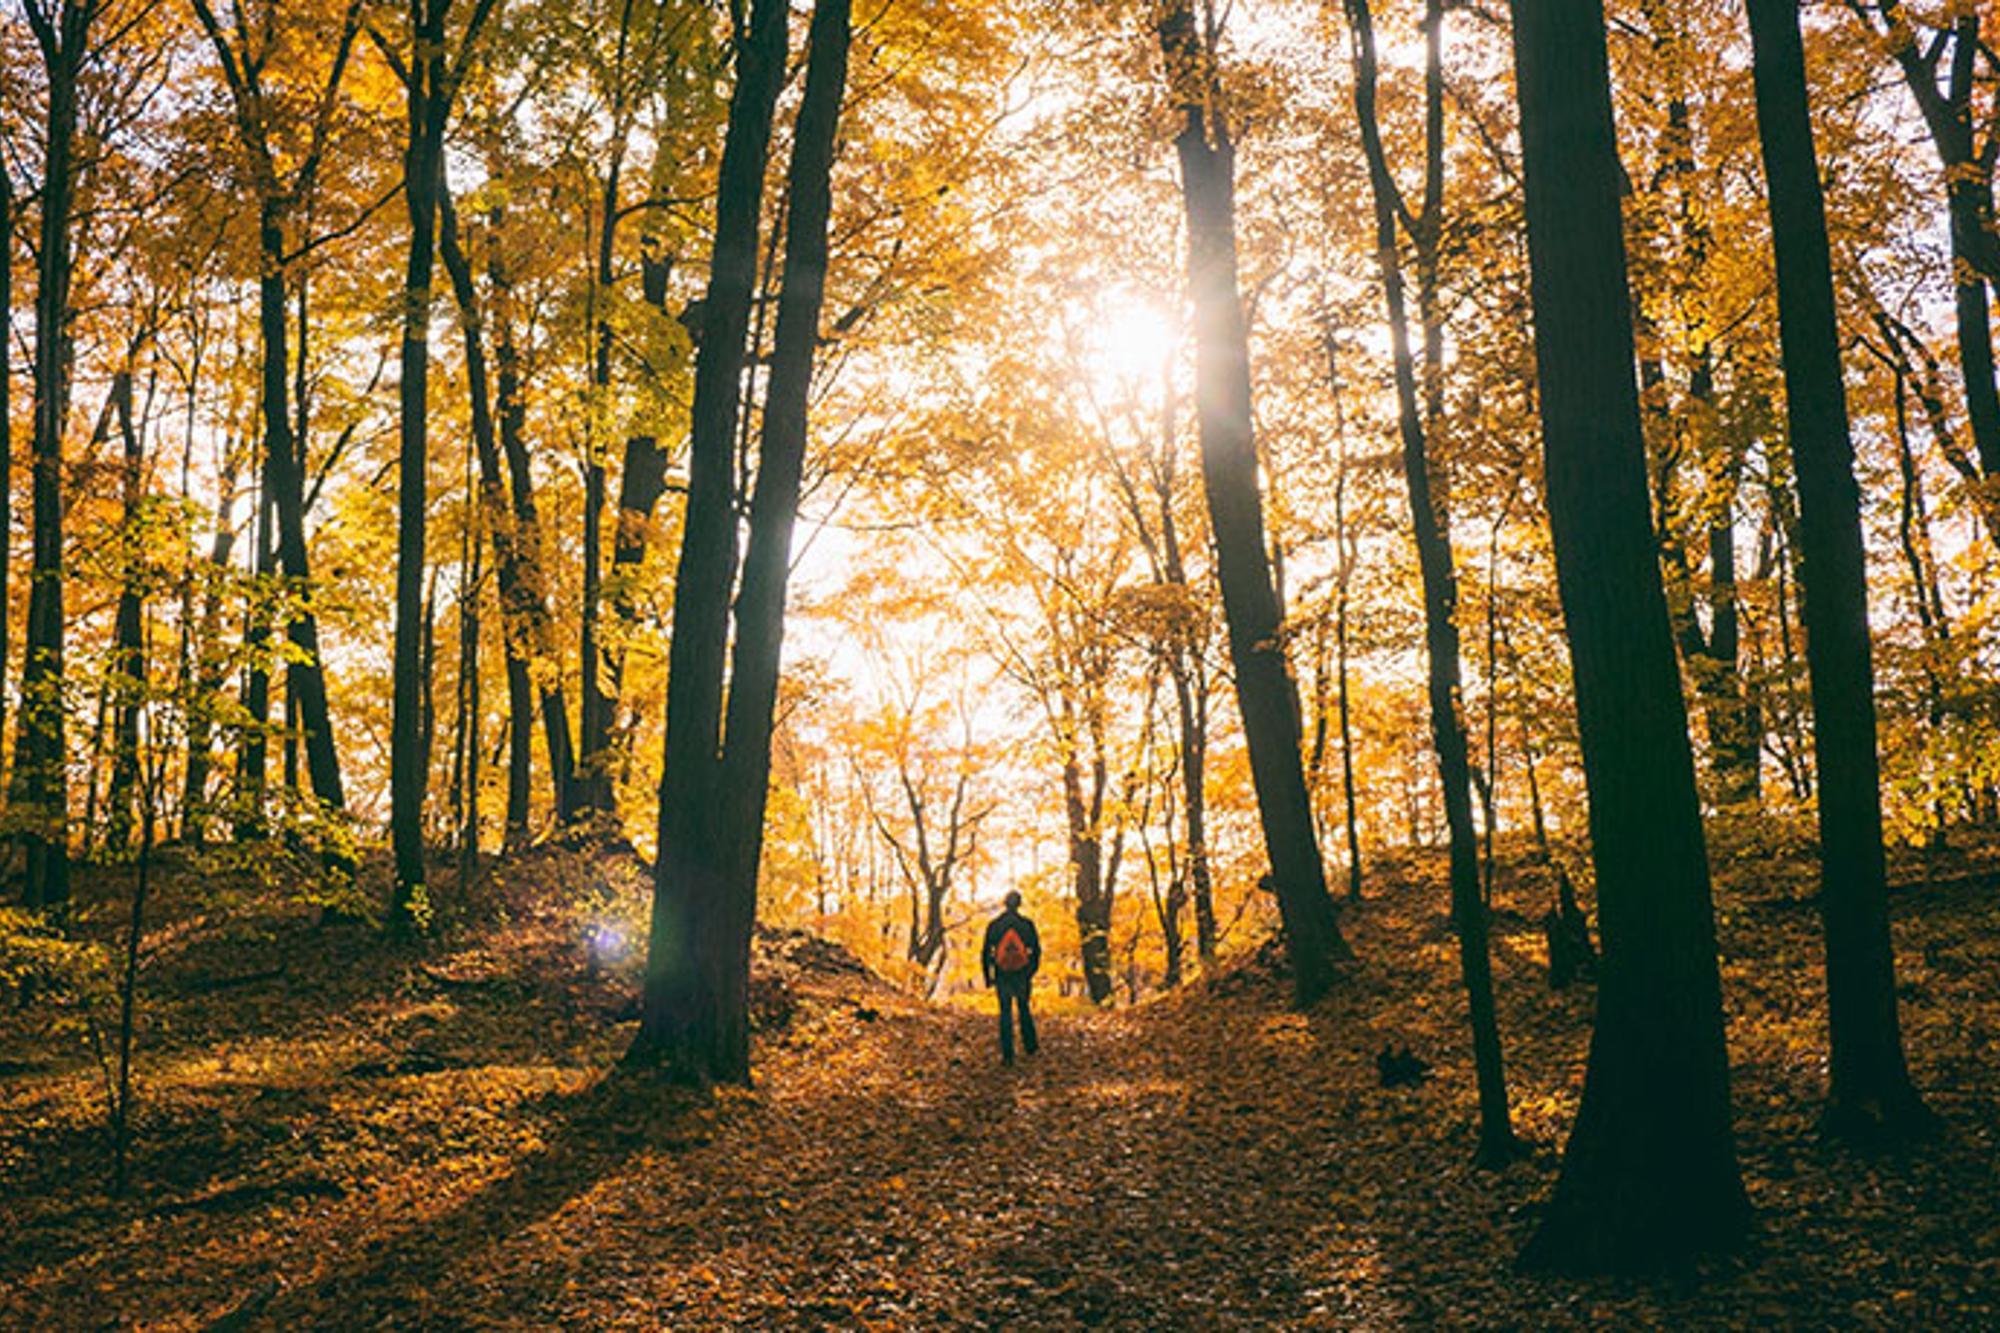 Ryggtavlan på en person som står i en skog full av träd. Det ligger löv på marken och solstrålar kikar igenom träden.